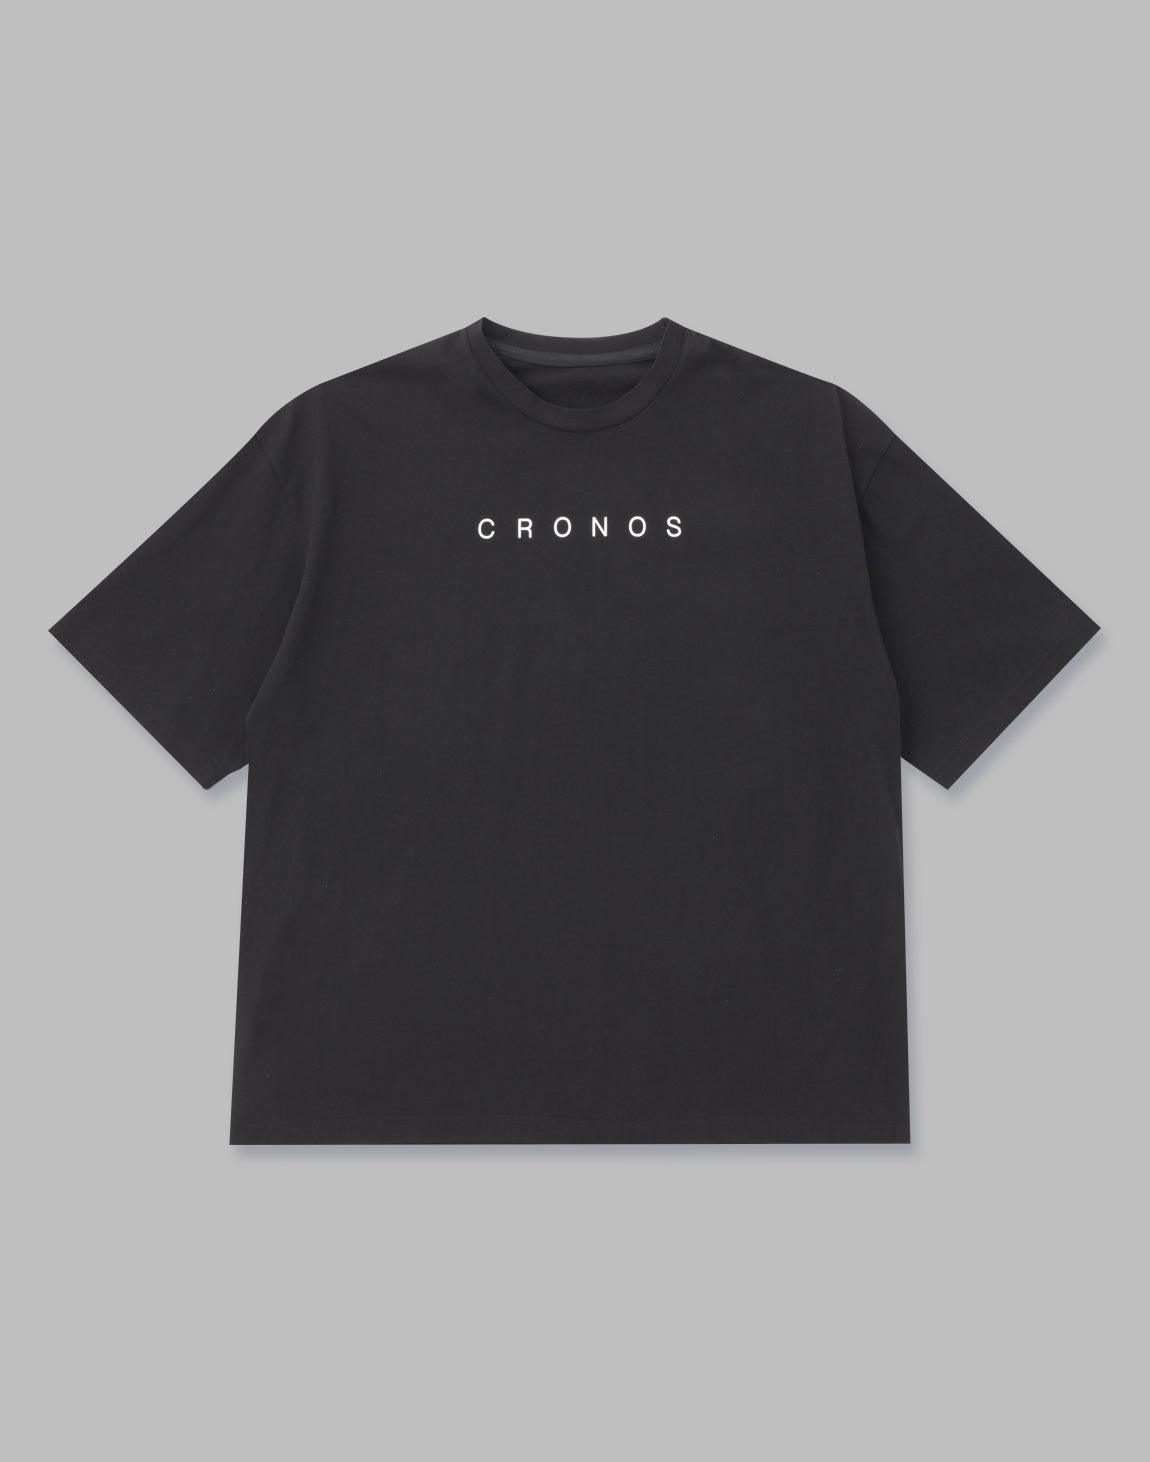 CRONOS Tシャツ Mサイズ-